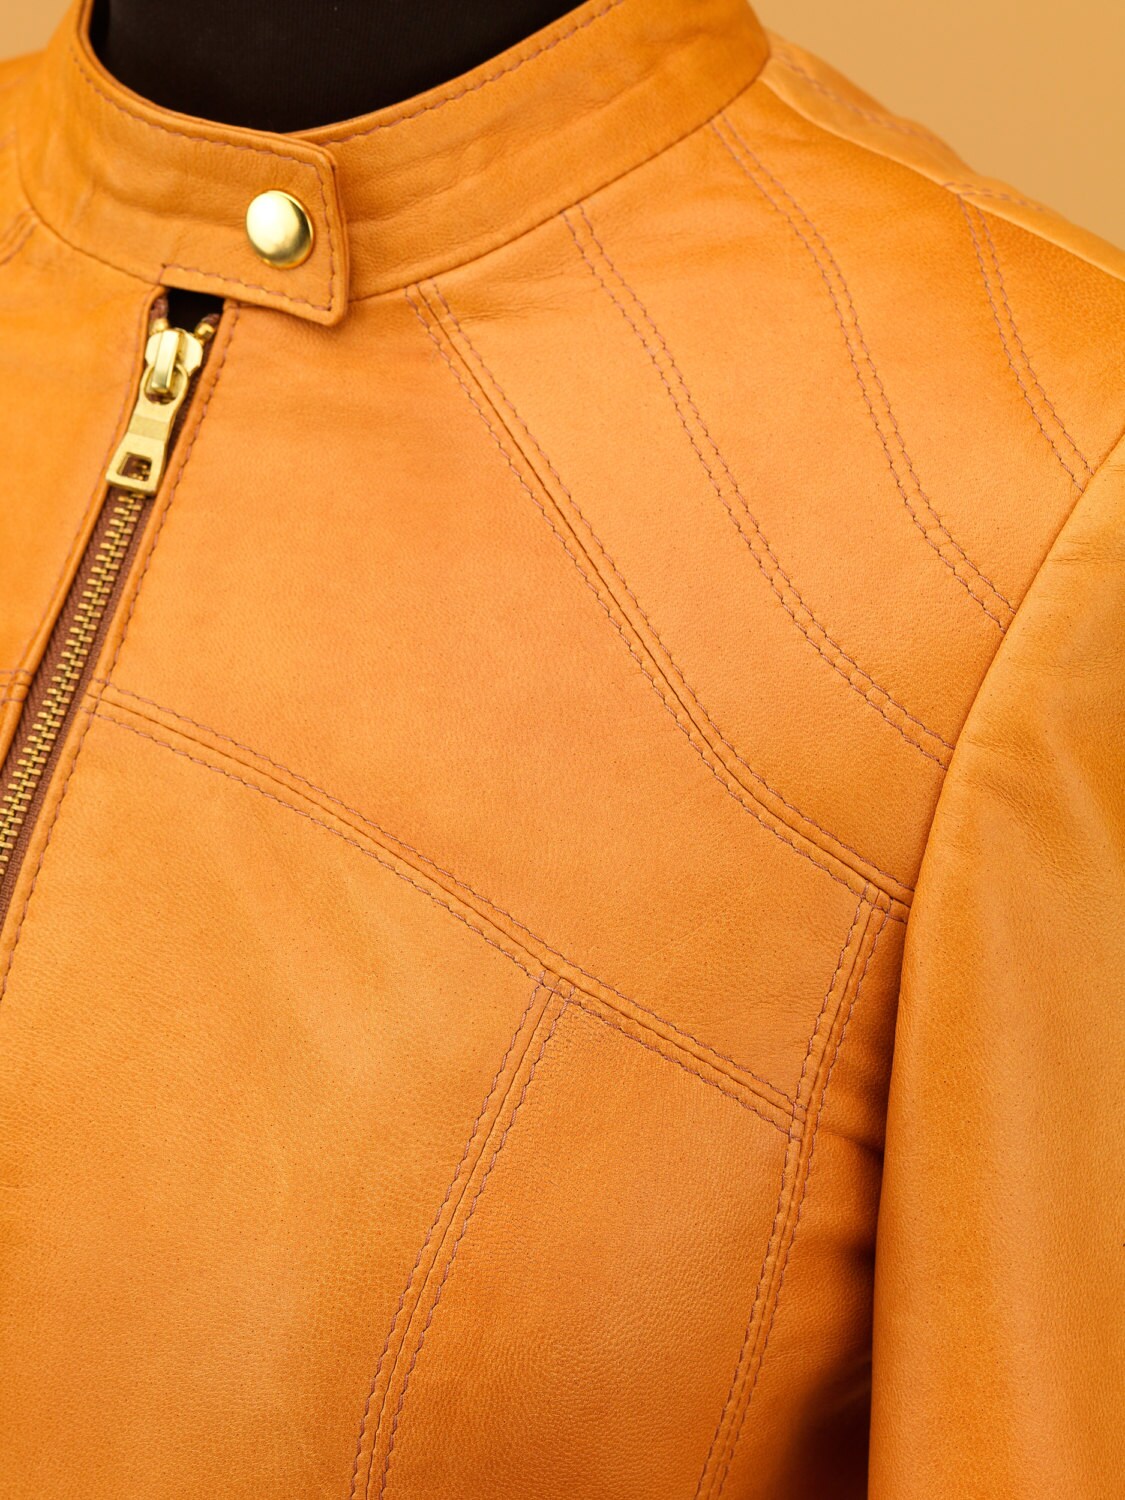 Handmade Women Leather Jacket | Etsy